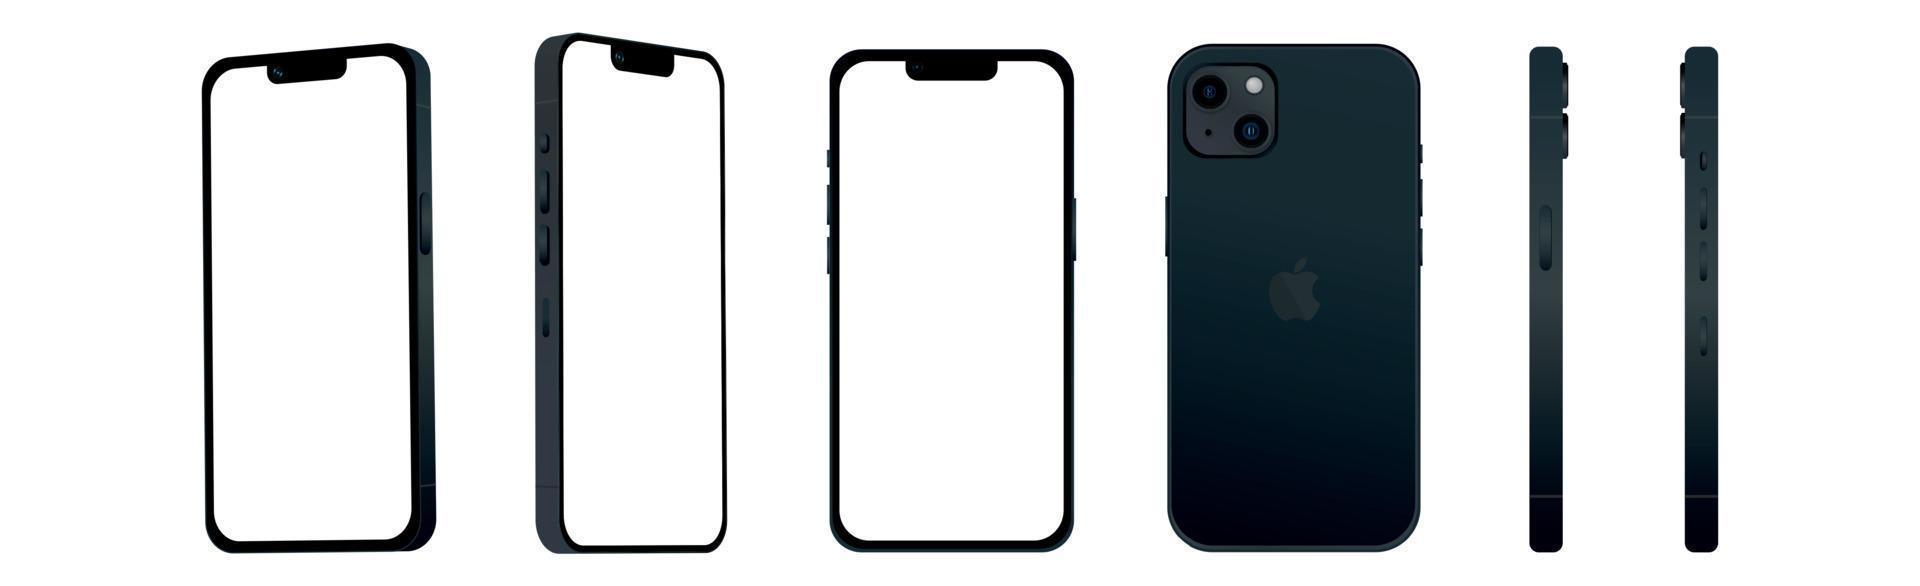 conjunto de 6 piezas desde diferentes ángulos, modelos de iphone 14 de Apple smartphone negro, nueva industria de ti, maqueta para diseño web sobre un fondo blanco - vector